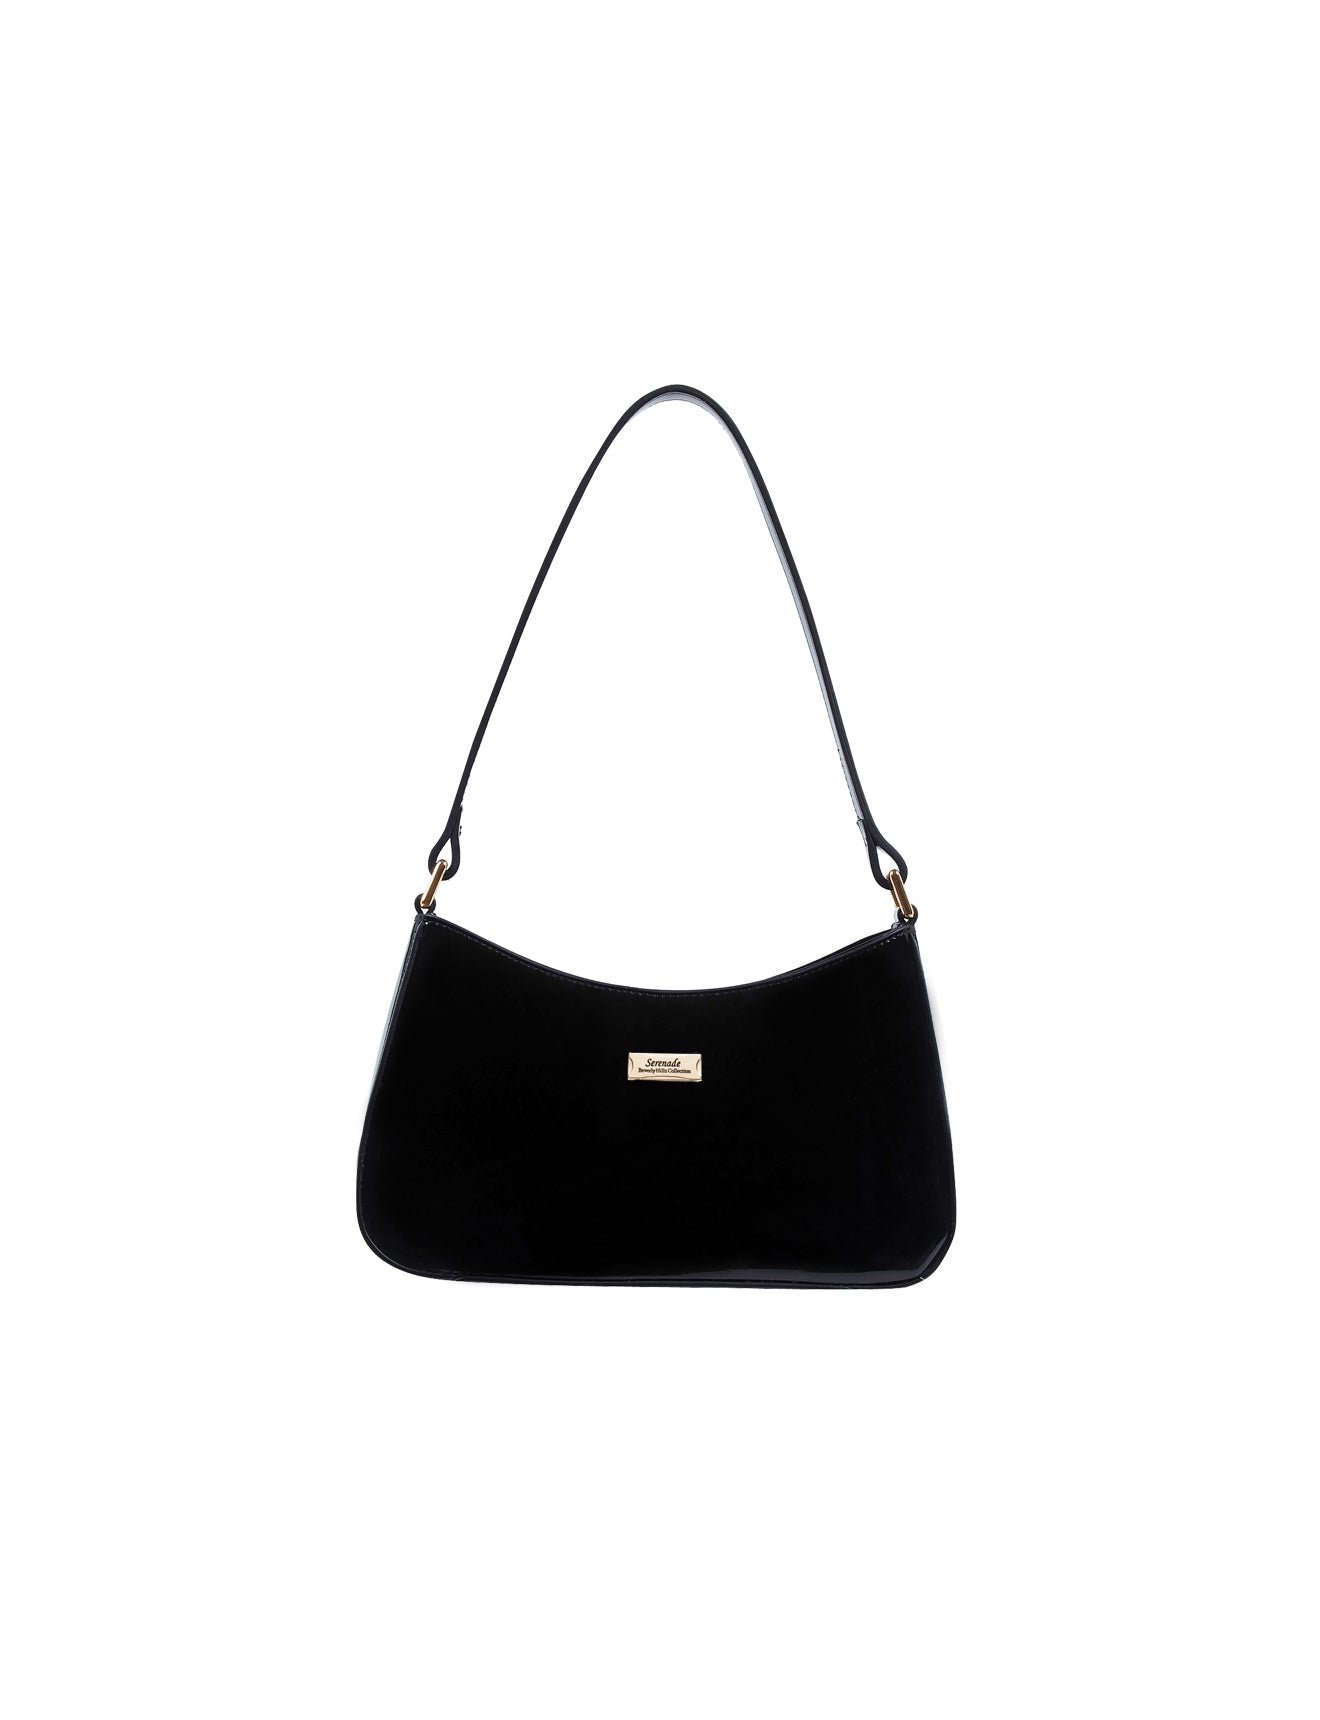 Serenade - Allura SV1-0821 Patent Leather Handbag - Black-1